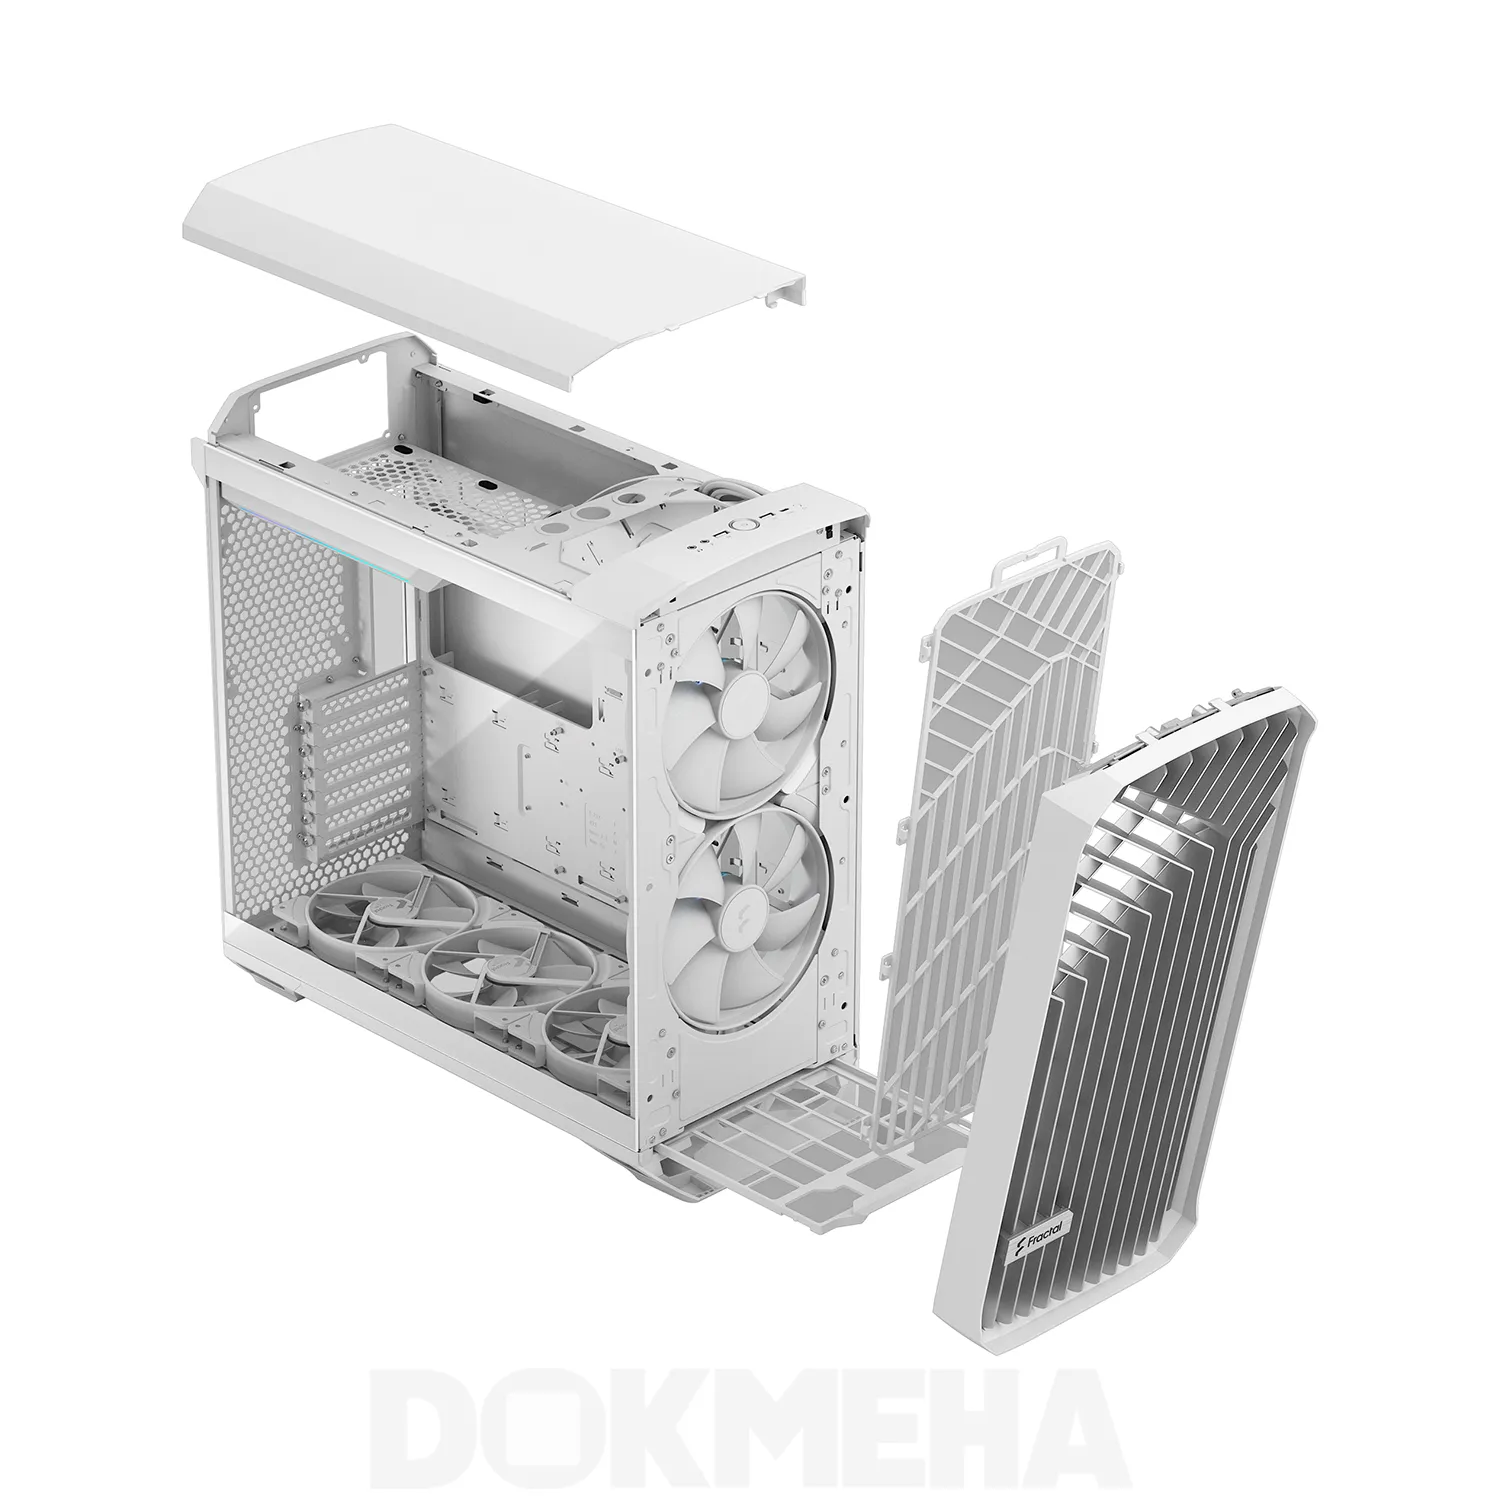 نمای پرسپکتیو رنگ سفید - جزییات بدنه - کیس ورک استیشن DOKMEHA W20000 Intel Xeon - 3TH GEN